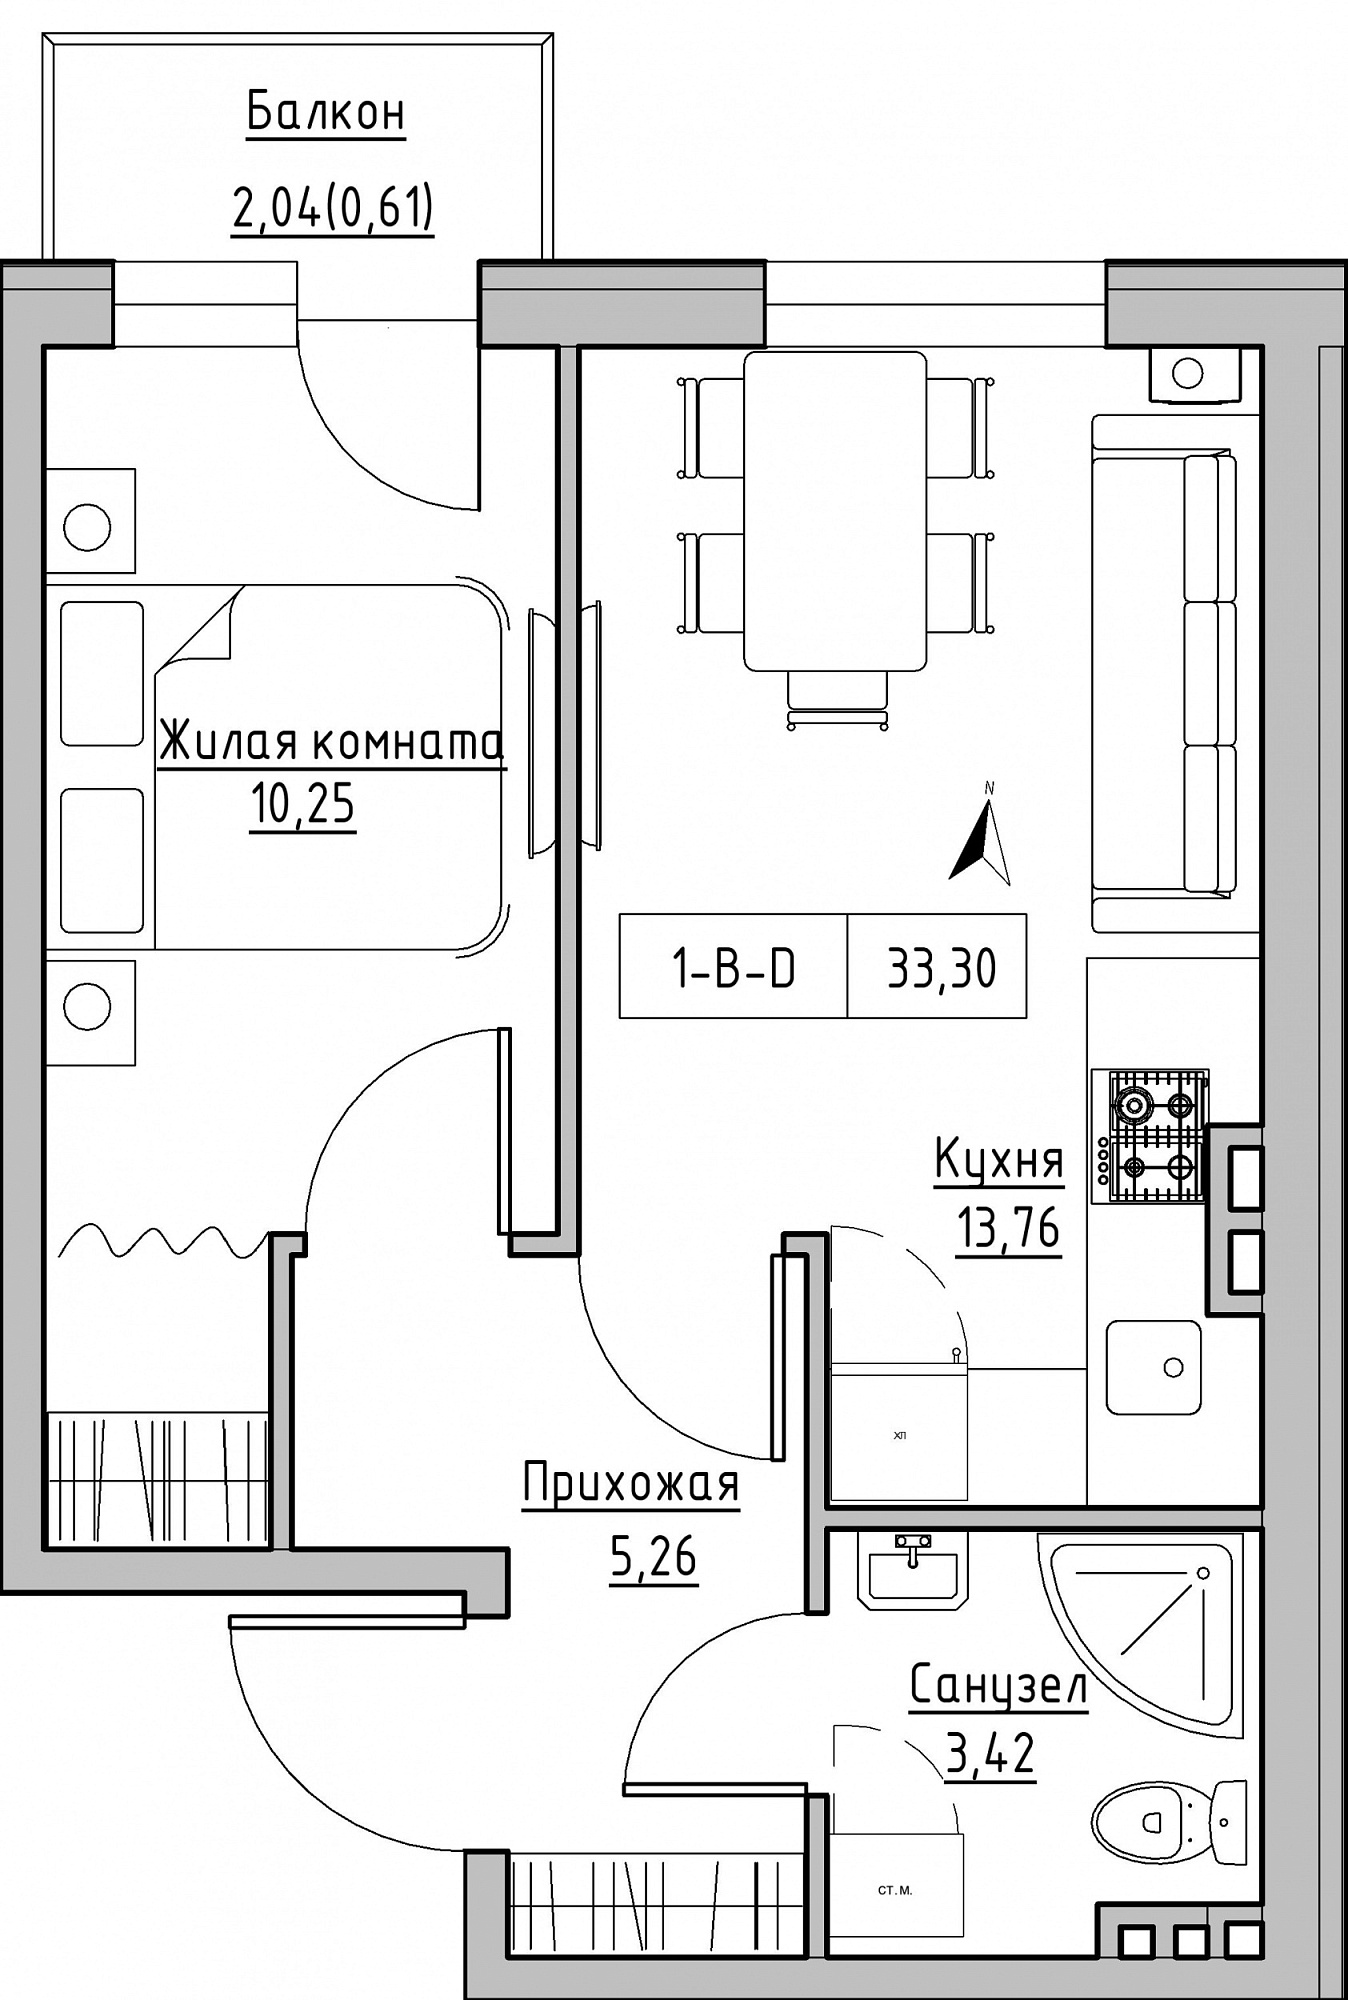 Планування 1-к квартира площею 33.3м2, KS-024-04/0003.